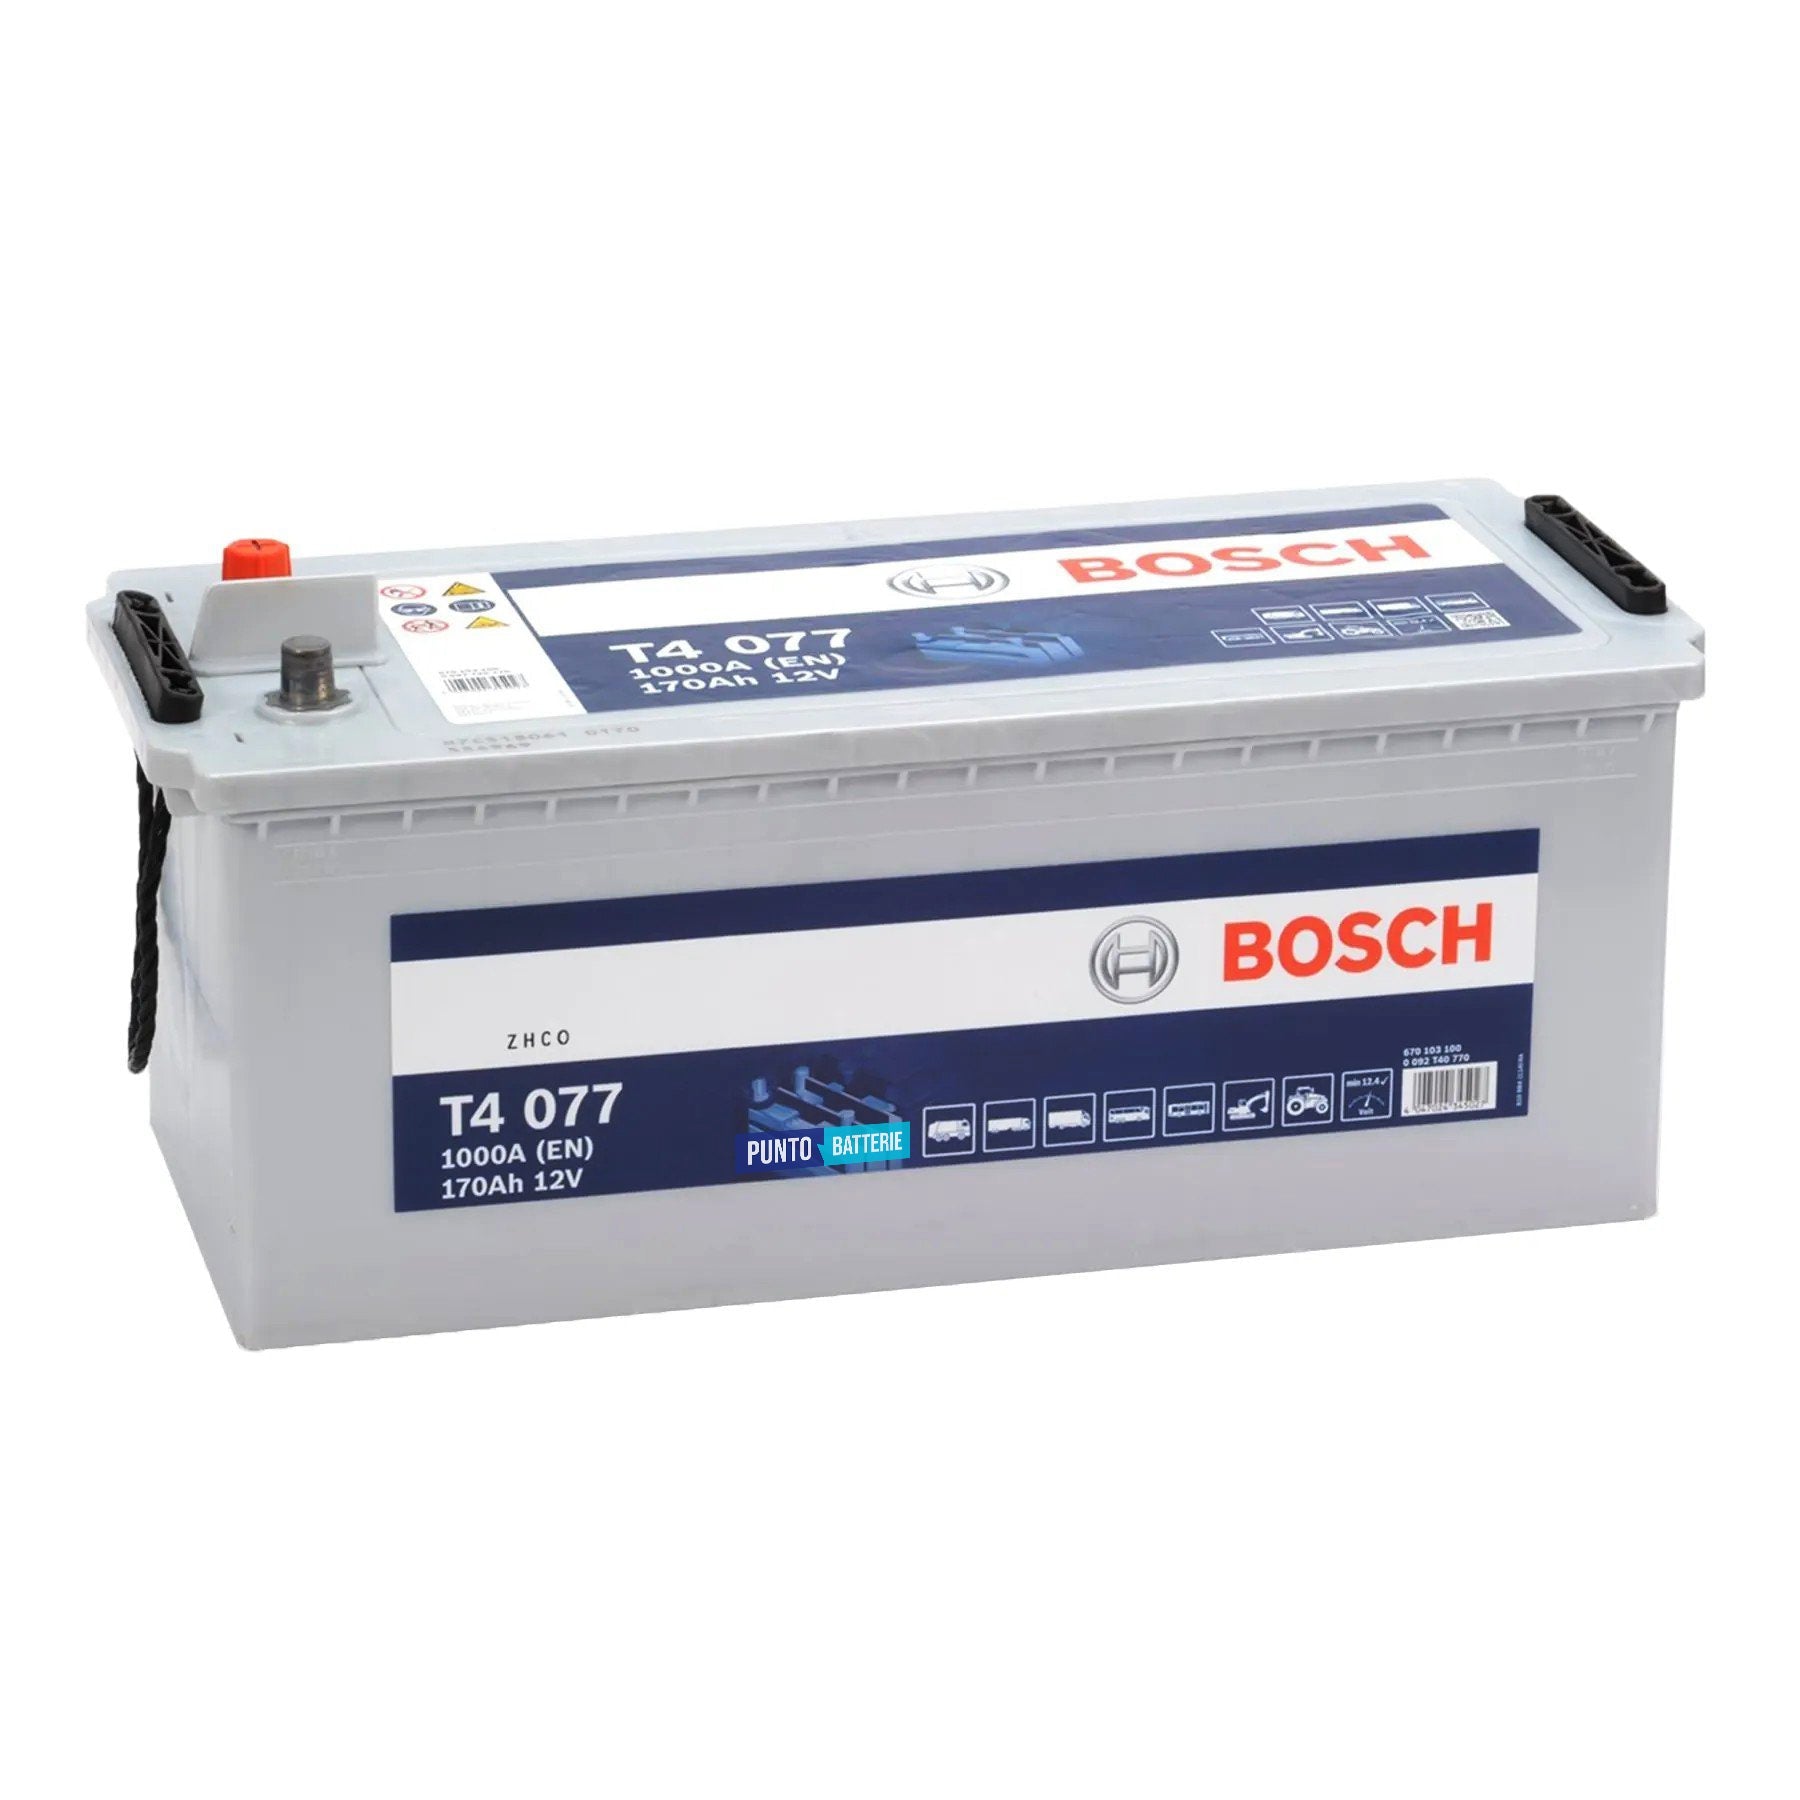 Batteria originale Bosch T4 T5077, dimensioni 513 x 223 x 223, polo positivo a sinistra, 12 volt, 170 amperora, 1000 ampere. Batteria per camion e veicoli pesanti.